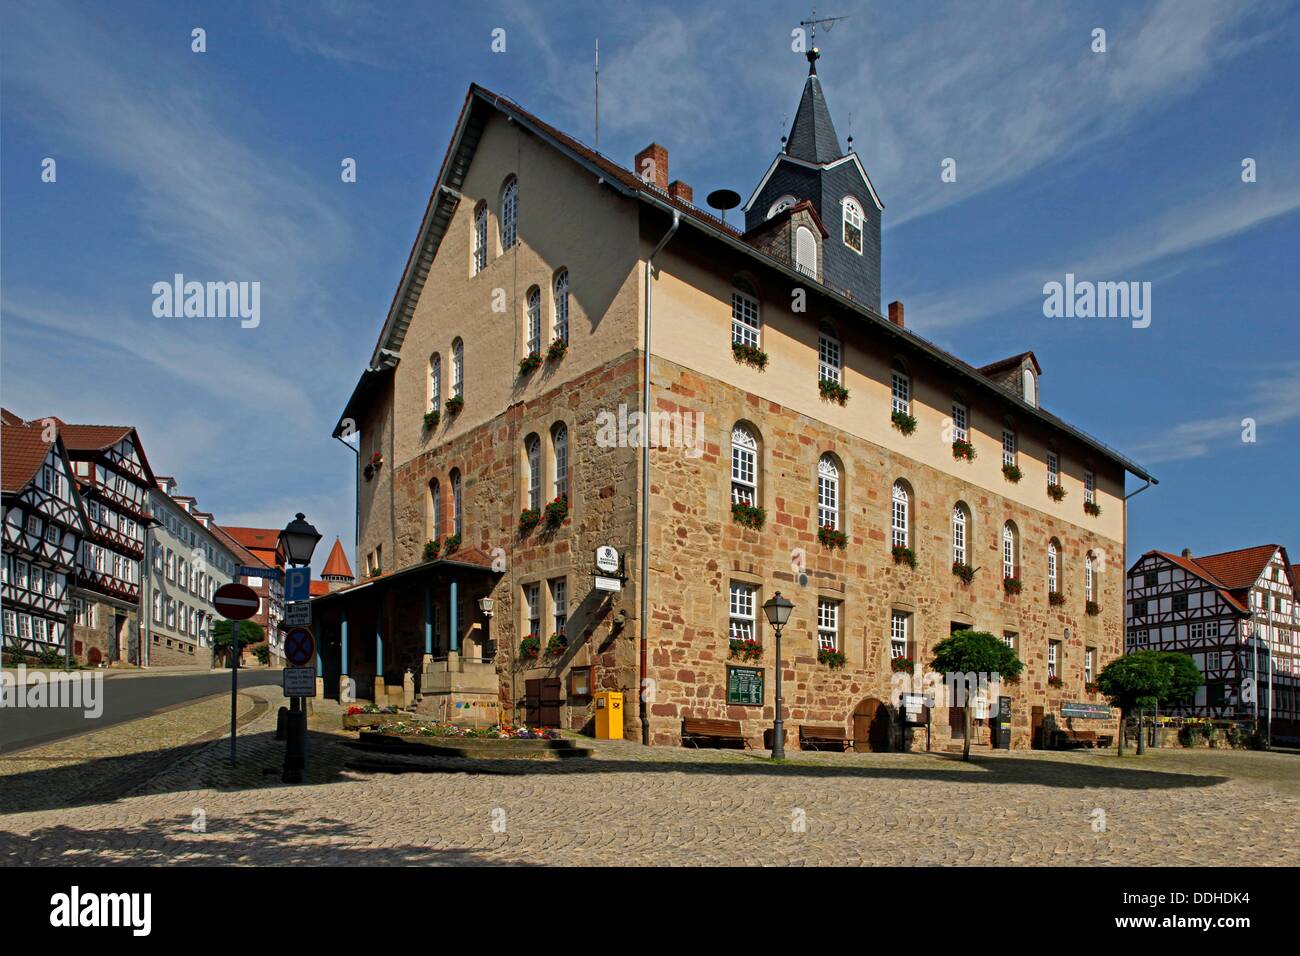 Die Stadt ist am besten von allen für seine Schloss Spangenberg, ein Schloss, gebaut im Jahre 1253 und Wahrzeichen der Stadt bekannt. Ebenfalls sehenswert sind das Rathaus und die Fachwerkbauten in der Altstadt und die Reste der alten Stadtmauer, einige von deren Türme ein Stockfoto